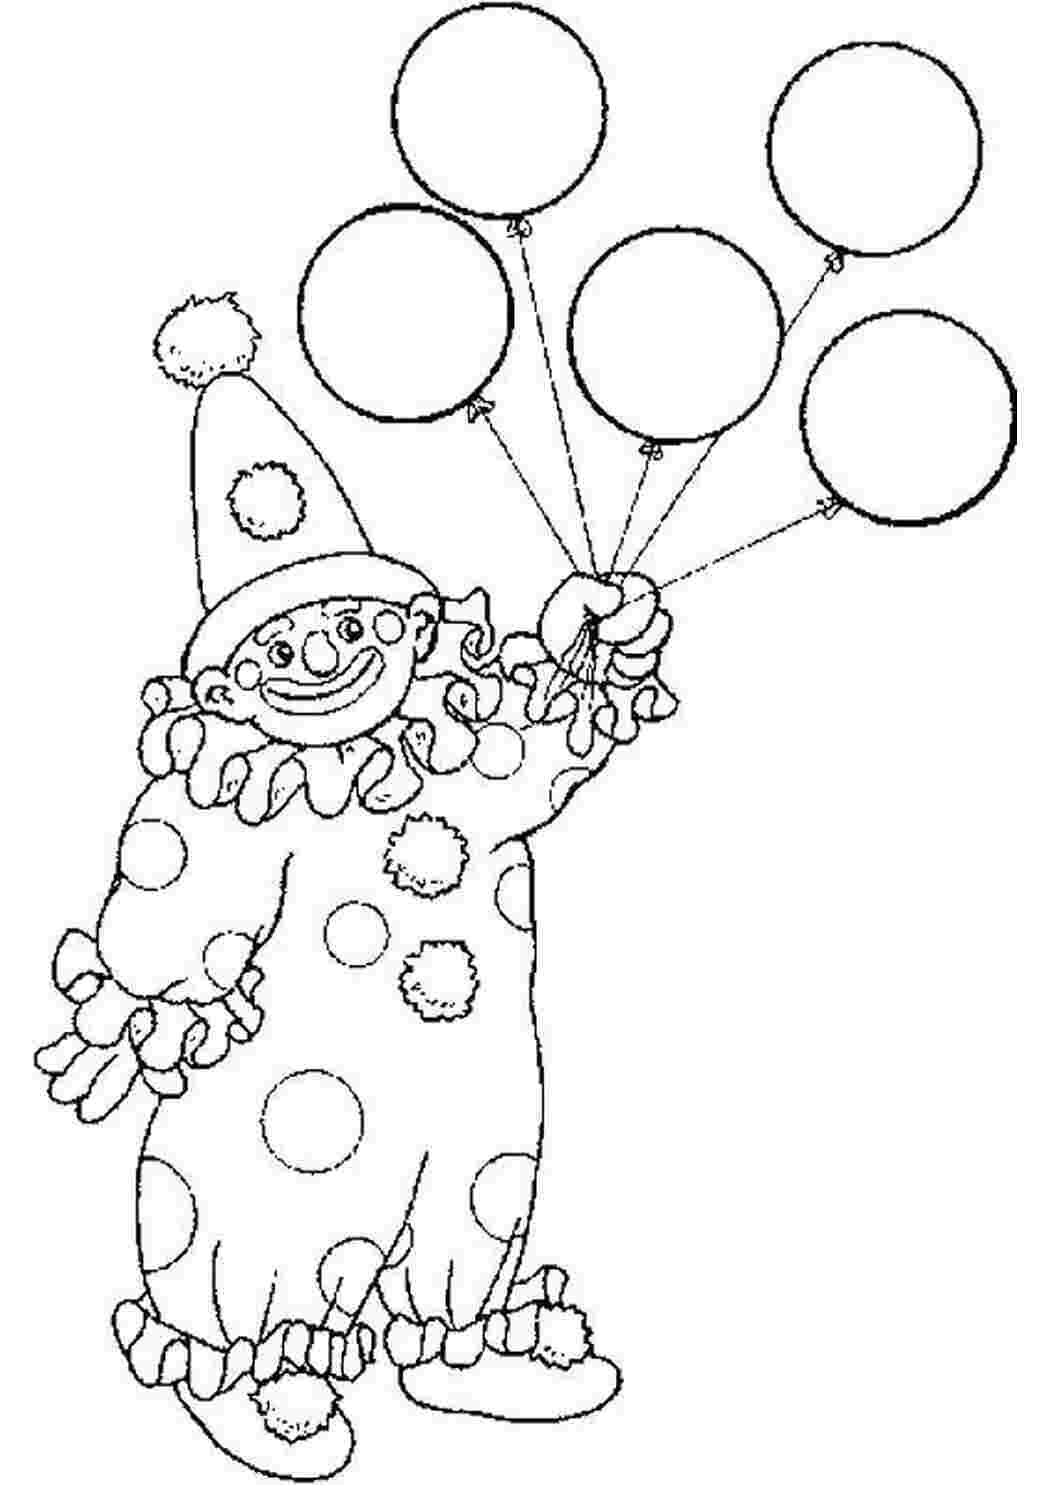 Клоун раскраска для детей 4 5. Клоун раскраска. Раскраска клоун с шариками. Клоун раскраска для детей. Клоун для раскрашивания детям.